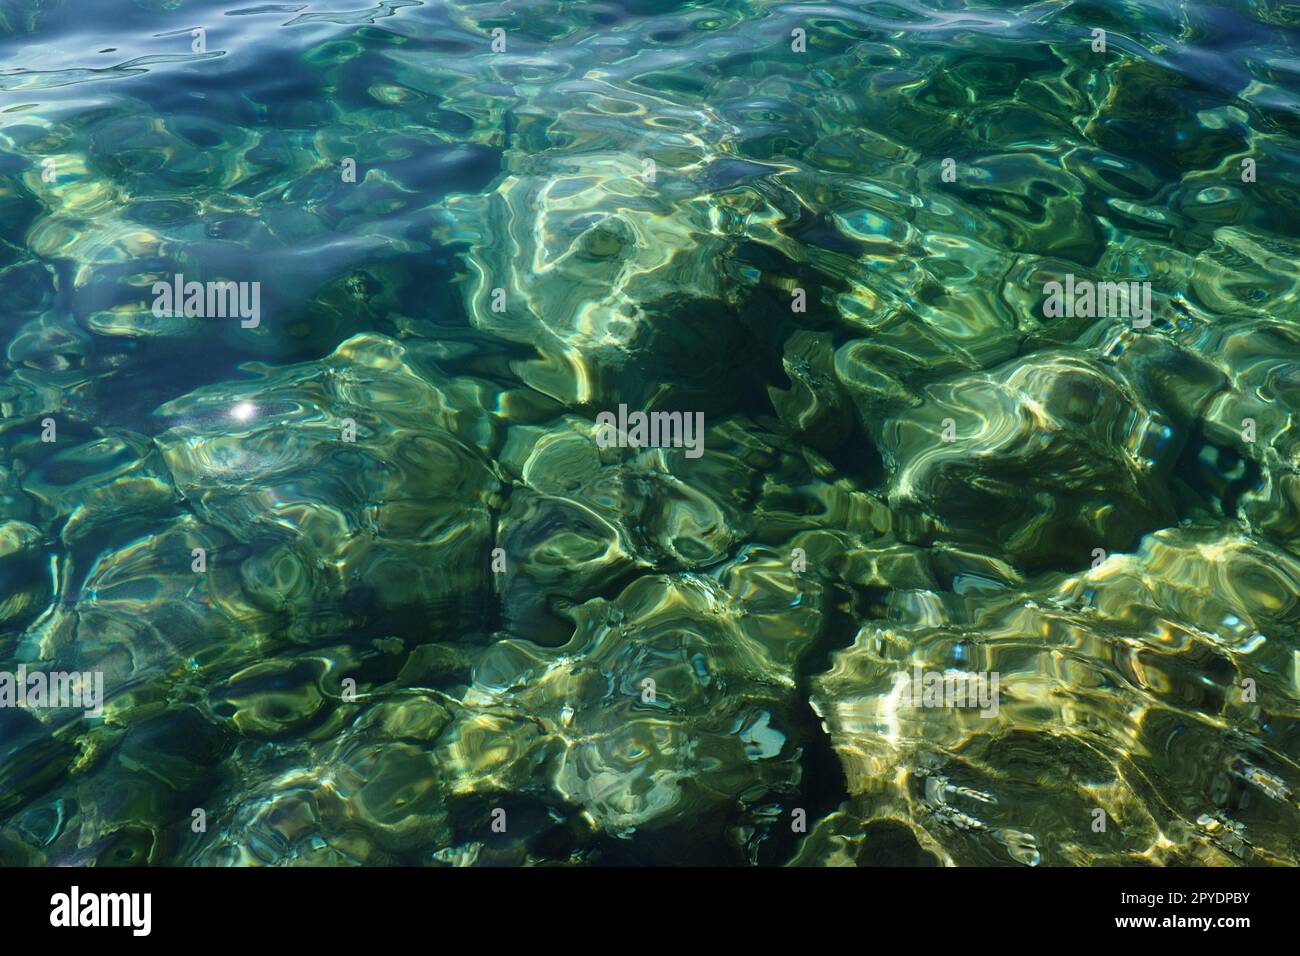 Consistenza di acqua salata trasparente blu turchese verde. Vista dall'alto della superficie dell'acqua e delle increspature. Acqua onde di mare sullo sfondo. Il fondo roccioso con alghe è visibile attraverso l'acqua cristallina Foto Stock